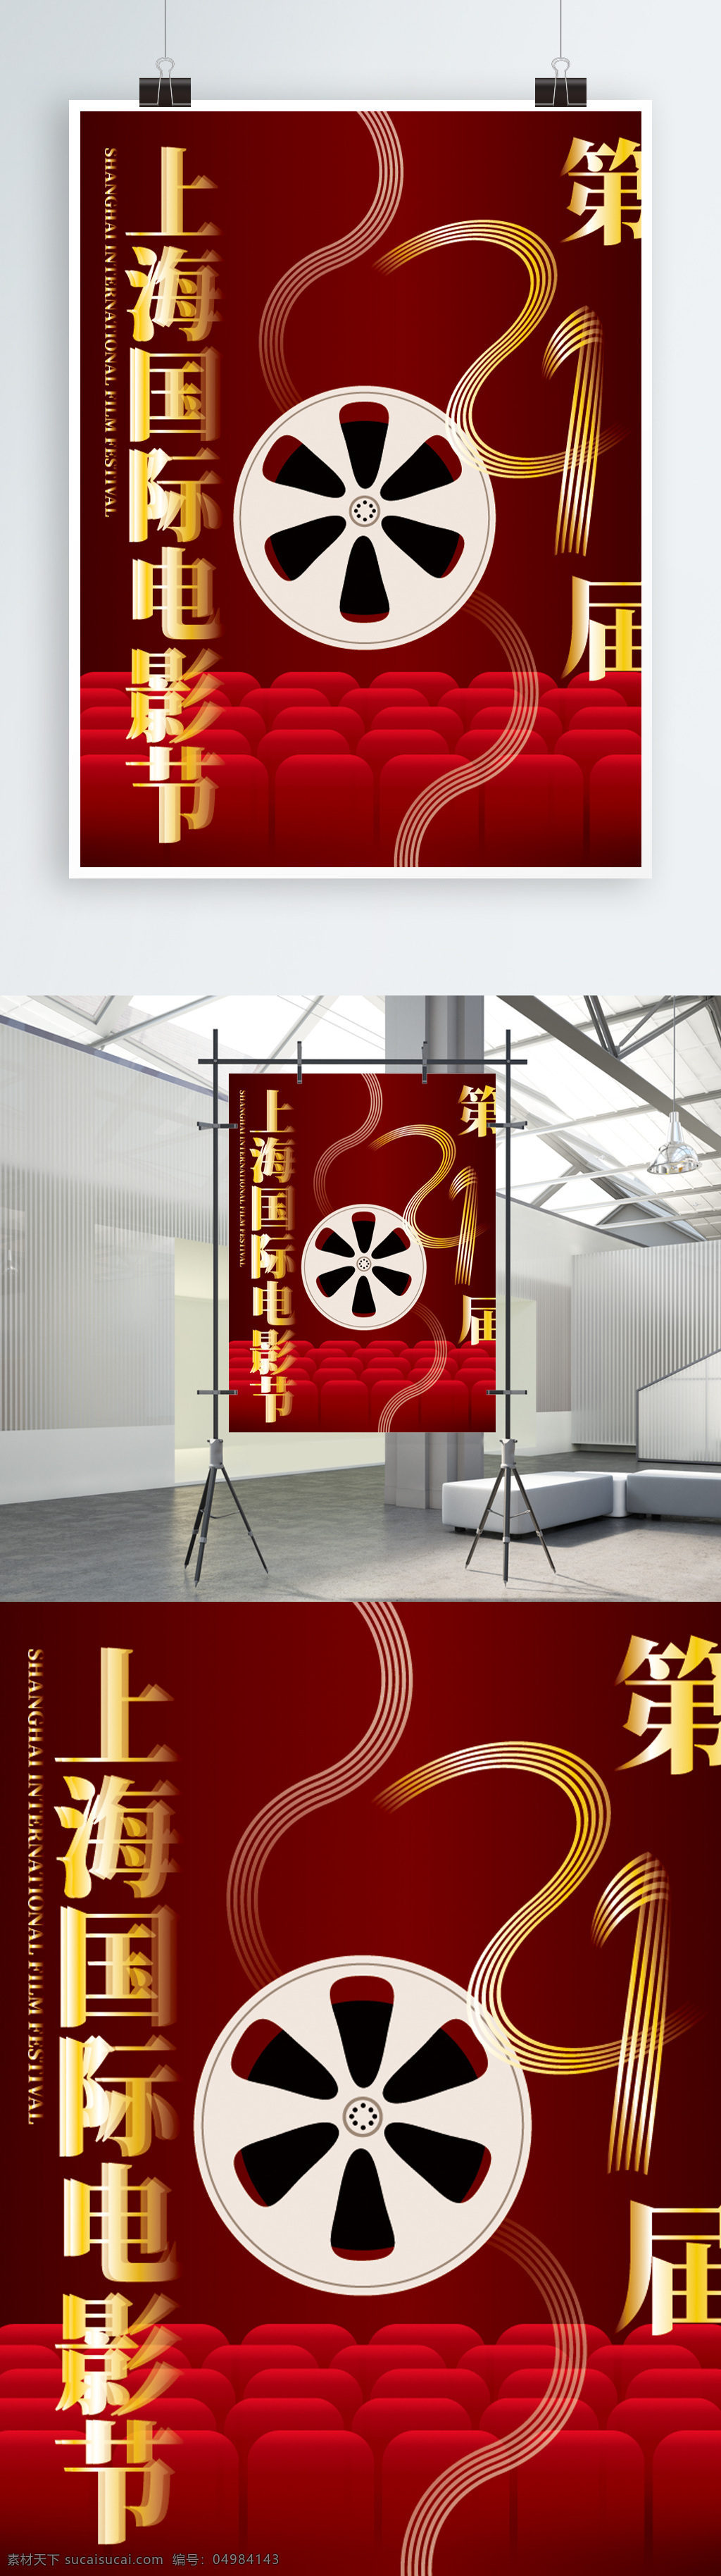 简约 大气 红色 上海 国际电影节 节日 海报 电影 宣传 电影院